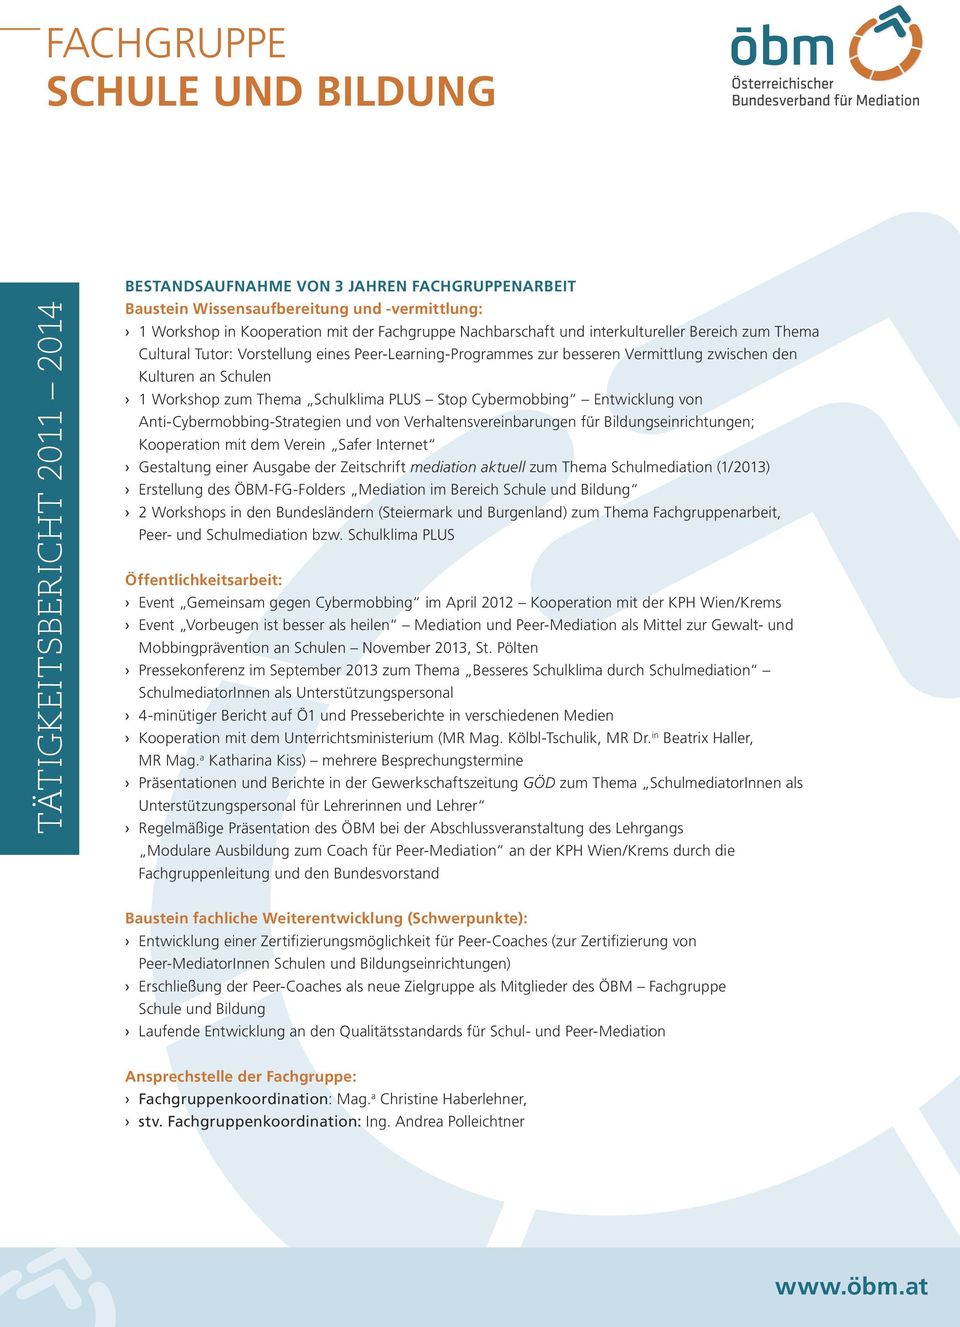 Bildungseinrichtungen; Kooperation mit dem Verein Safer Internet Gestaltung einer Ausgabe der Zeitschrift mediation aktuell zum Thema Schulmediation (1/2013) Erstellung des ÖBM-FG-Folders Mediation